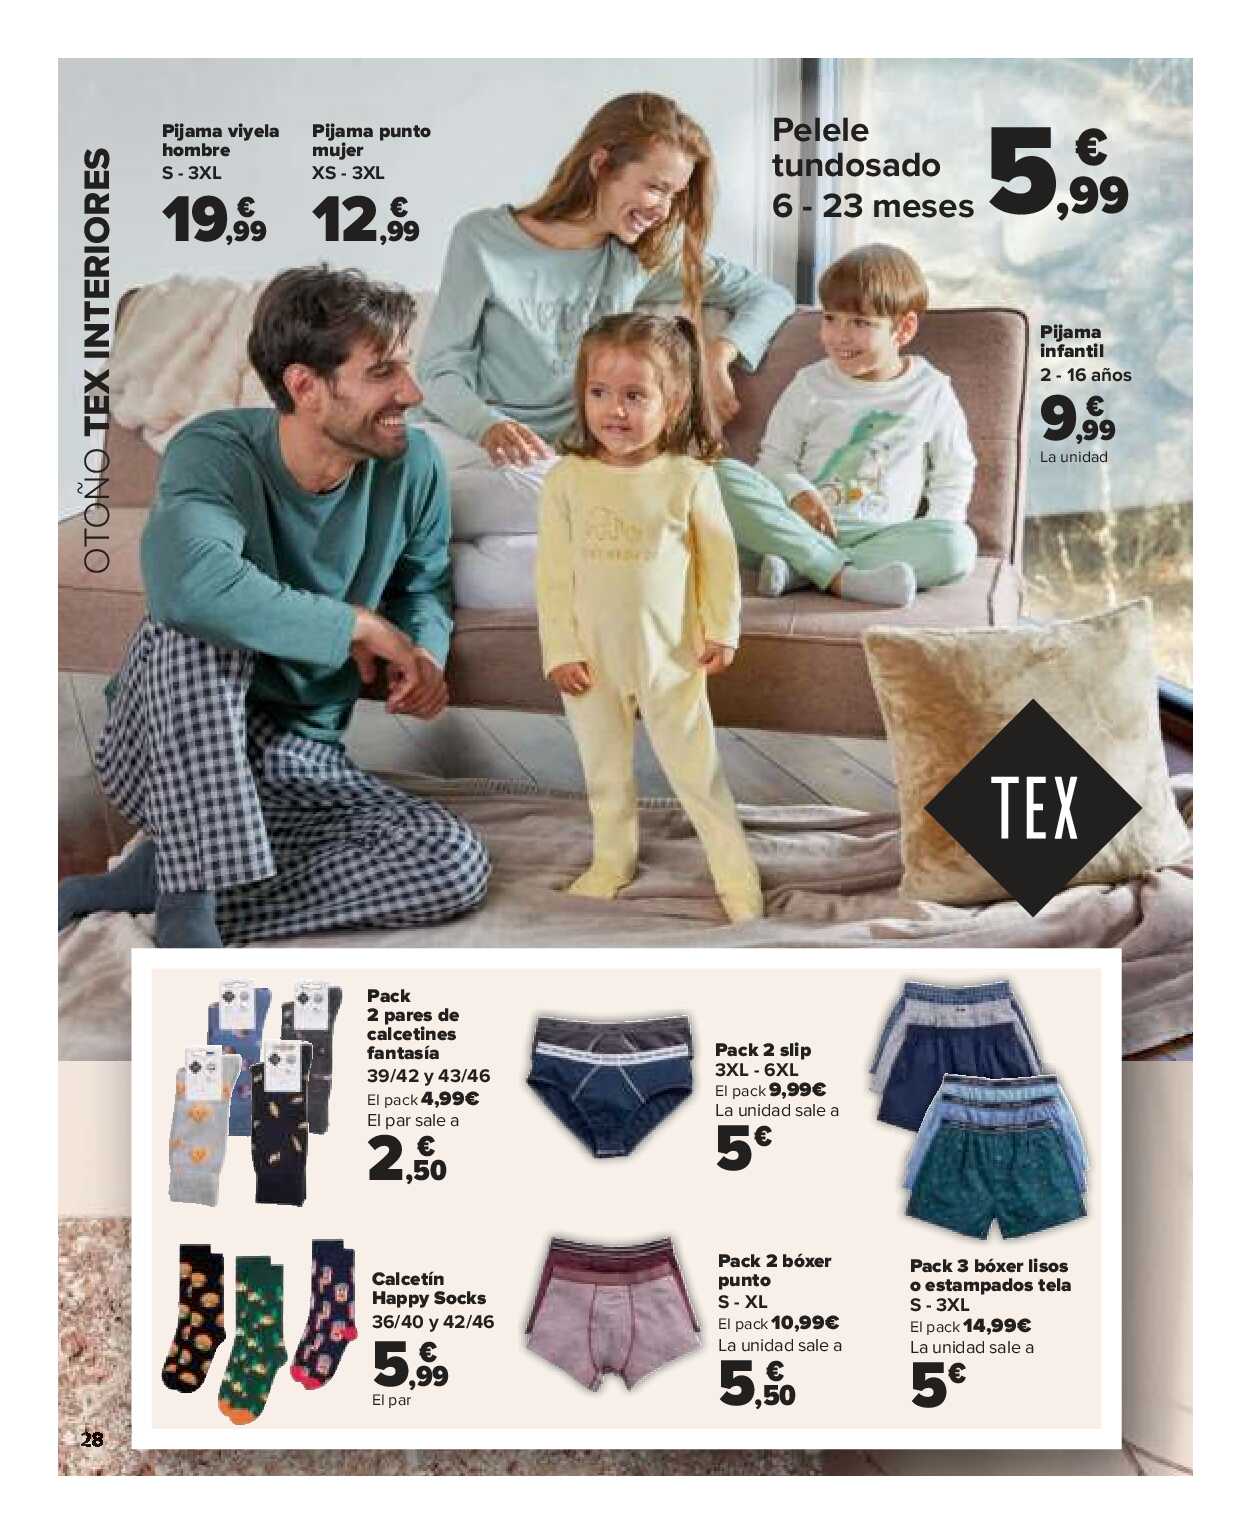 Textil mujer, hombre y niños Carrefour. Página 28